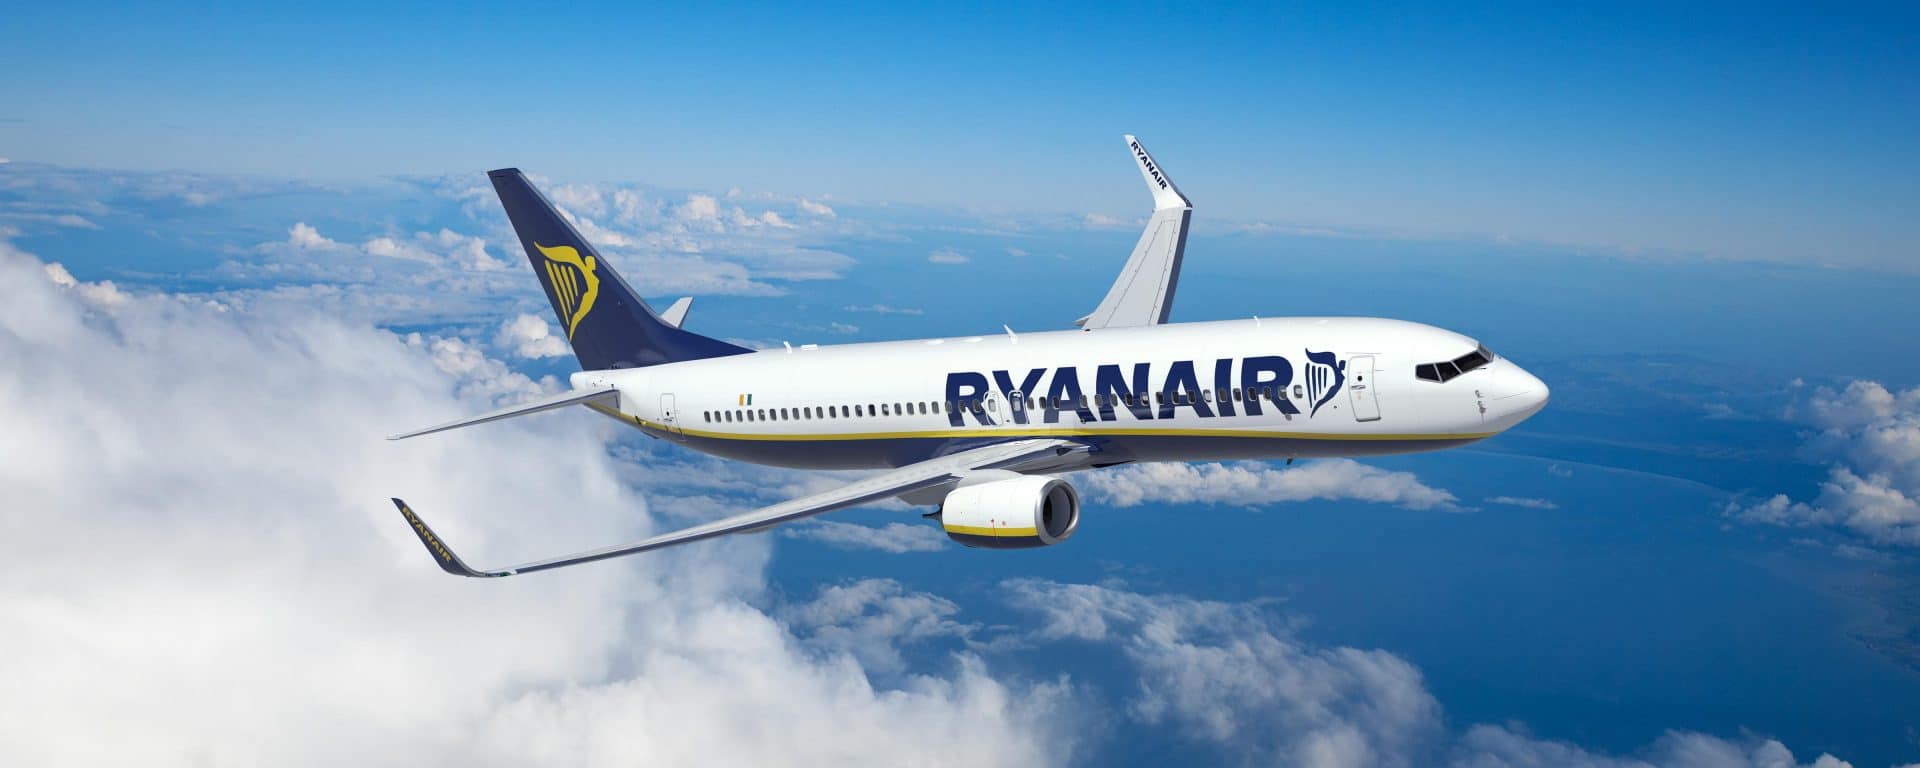 Destinazioni Autunnali Rotte Low Cost Con Ryanair E Easyjet